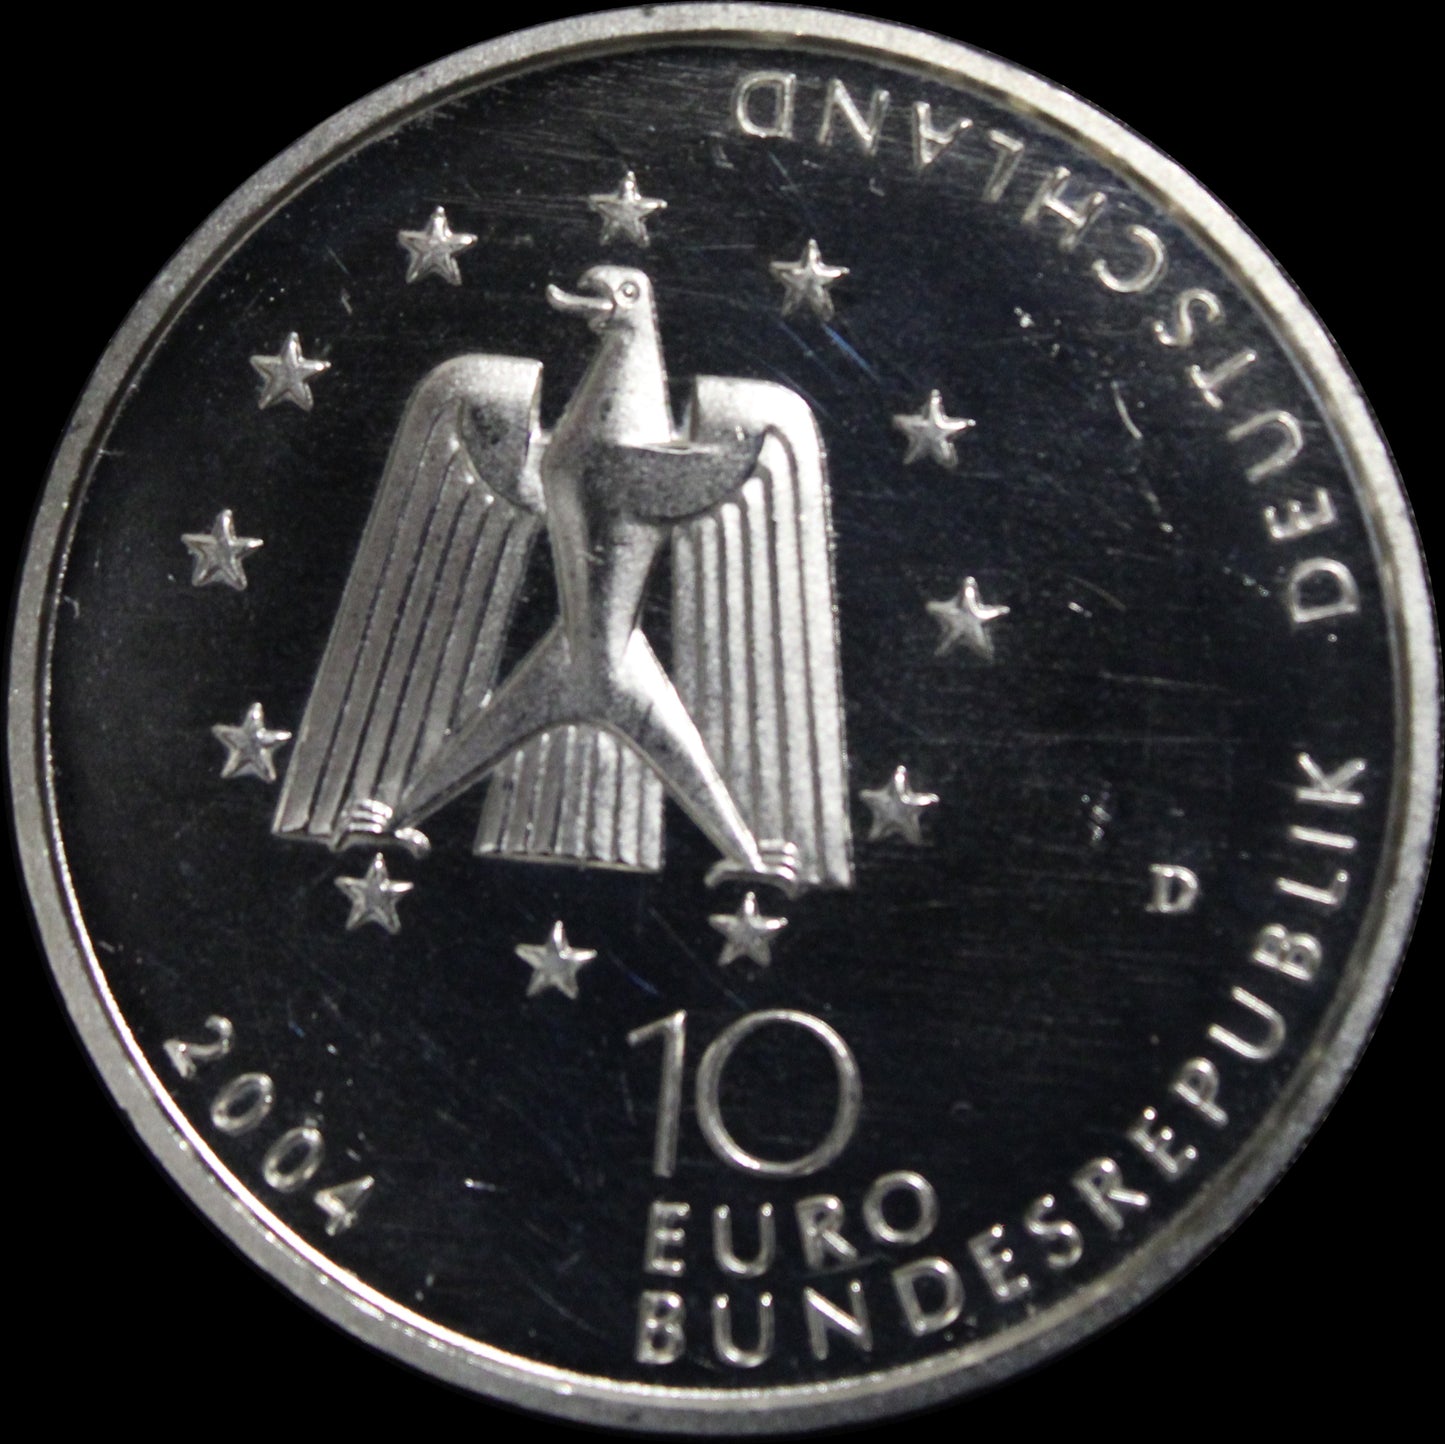 COLUMBUS - INTERNATIONALE RAUMSTATION, Serie 10 € Silber Gedenkmünzen Deutschland, Spiegelglanz, 2004